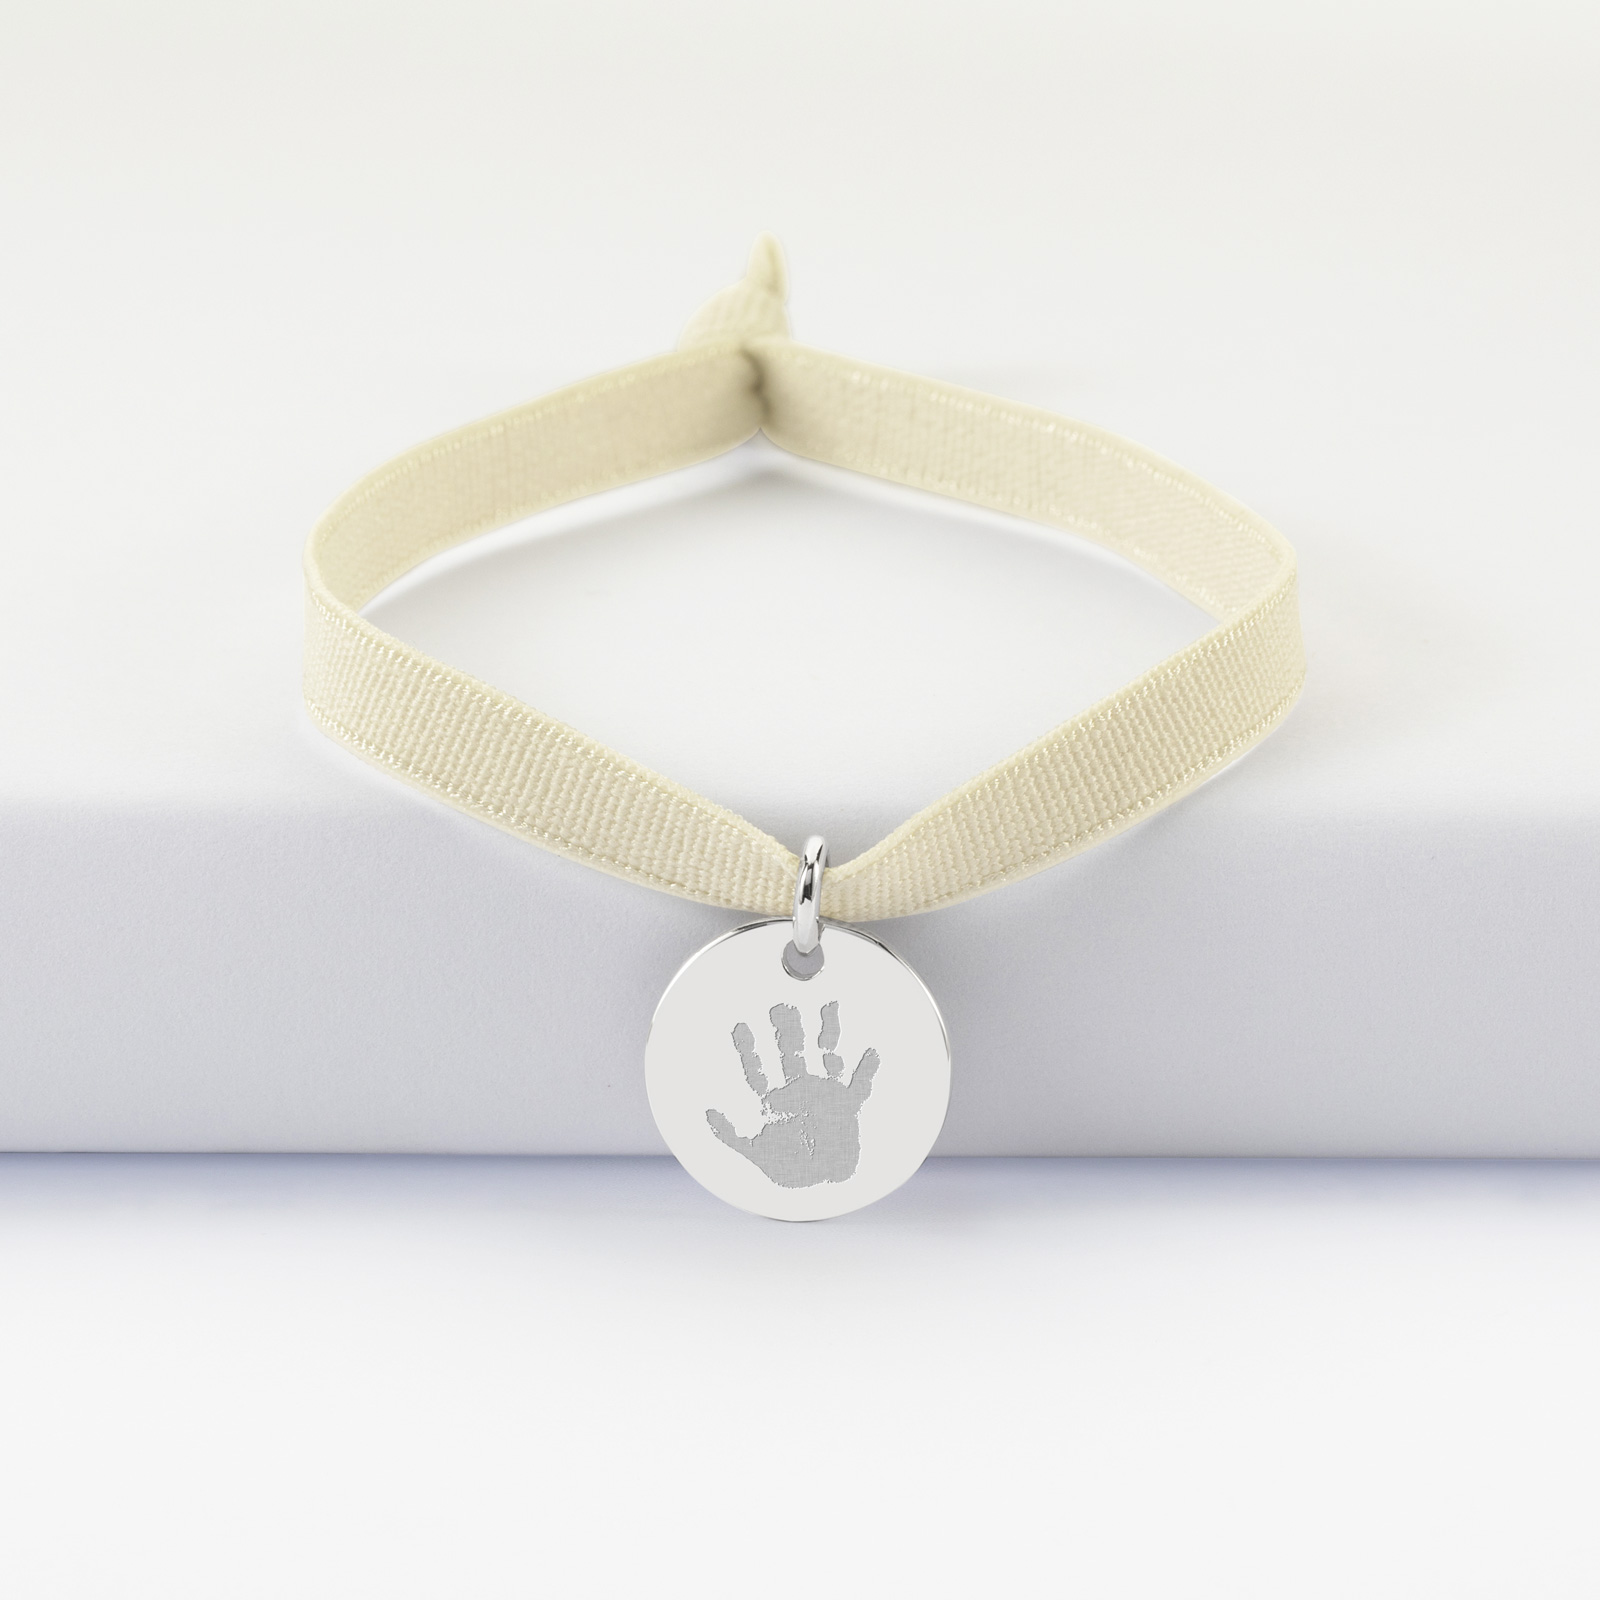 Coffret enfant de bracelets personnalisés cordons interchangeables  élastiques médaille argent nuage 20x14 mm gravée